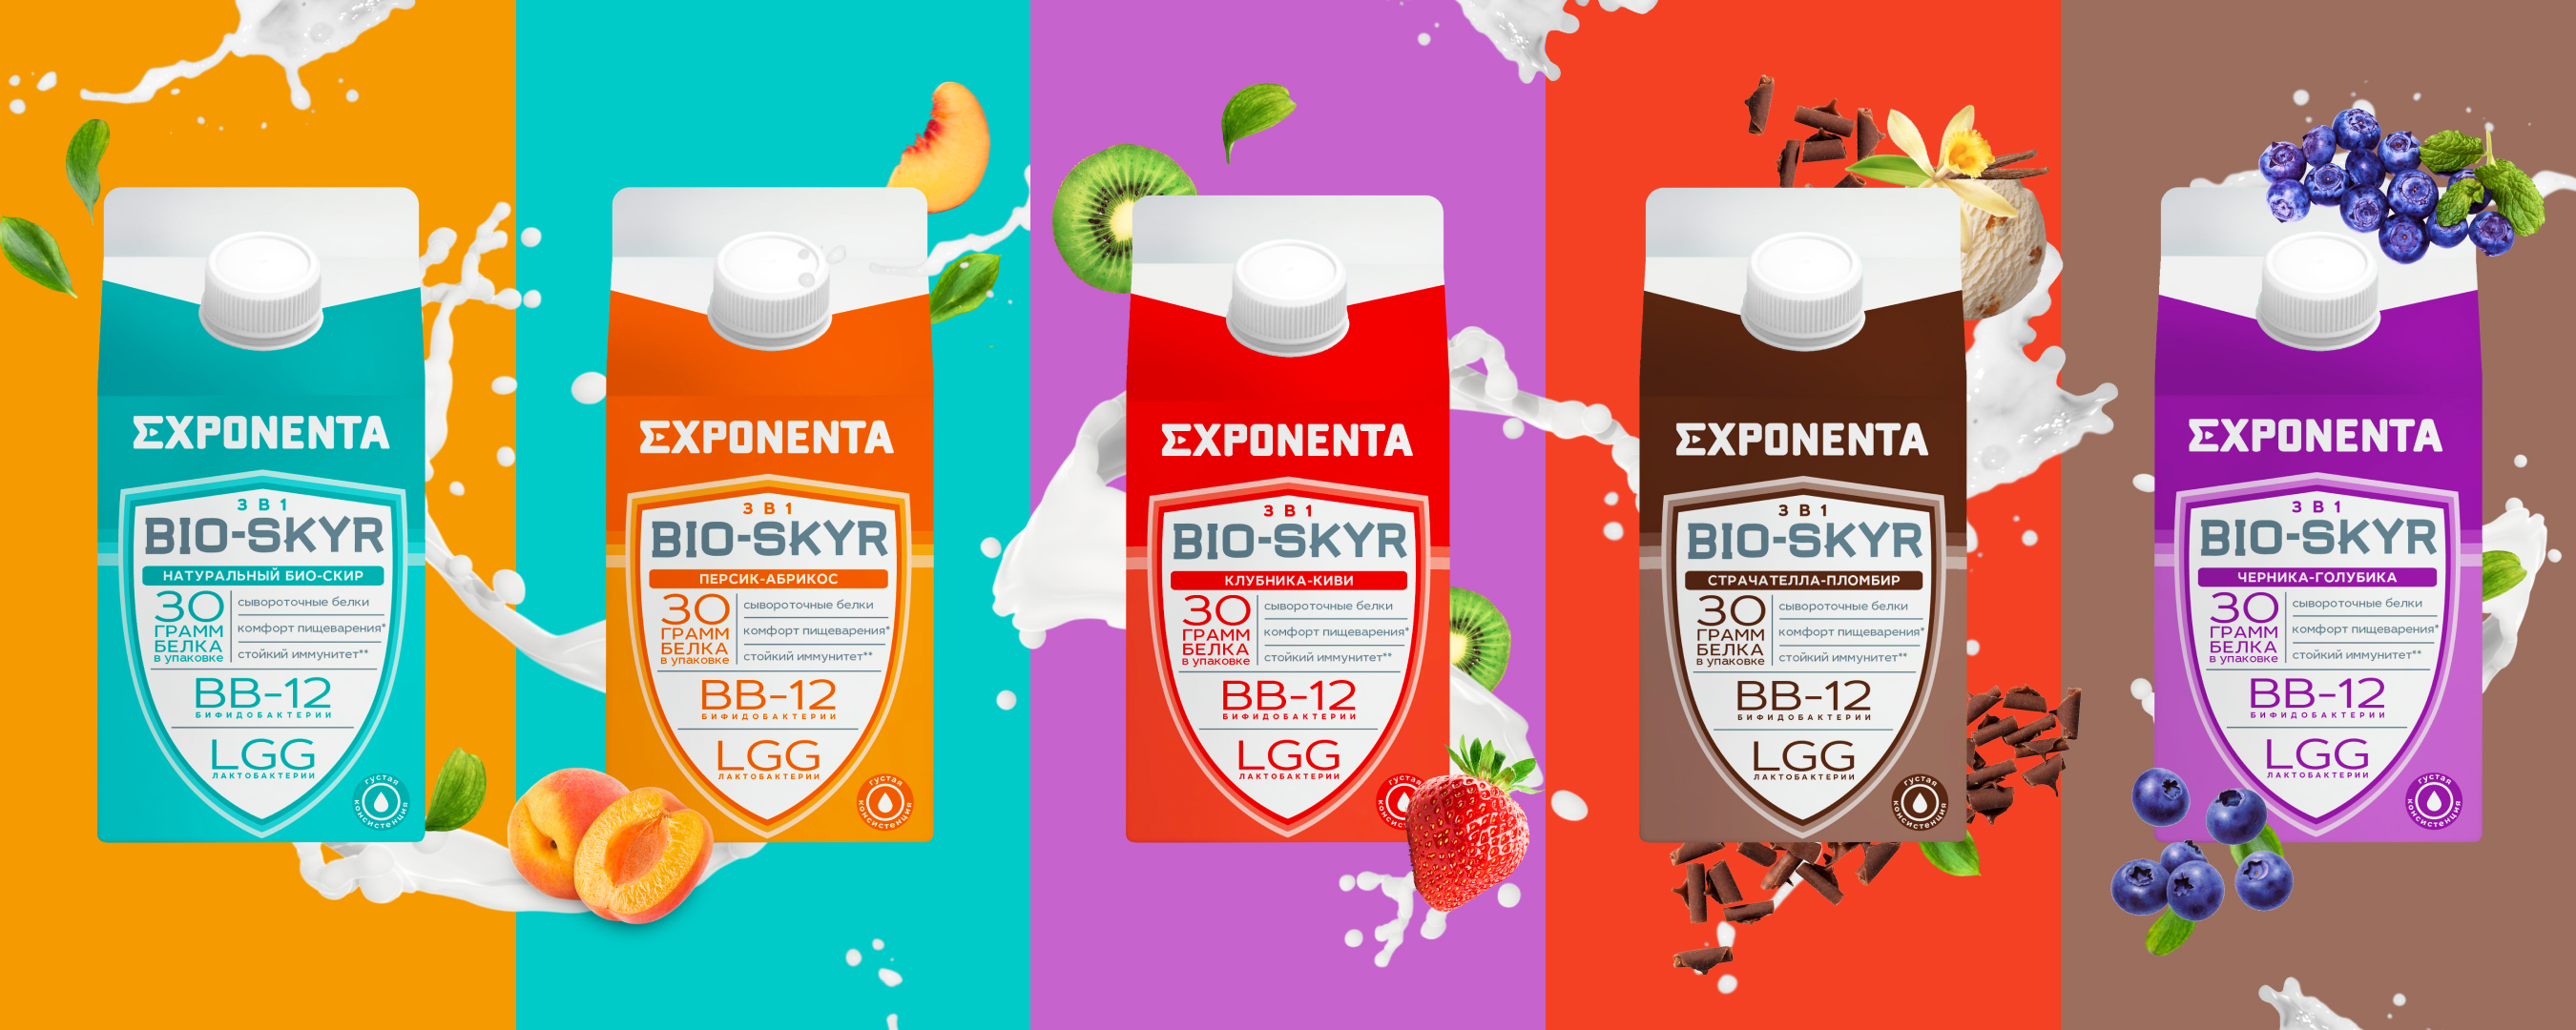 Exponenta bio skyr купить. Белковый напиток Exponenta. Экспонента продукт. Экспонента кисломолочный продукт. Экспонента био скир.